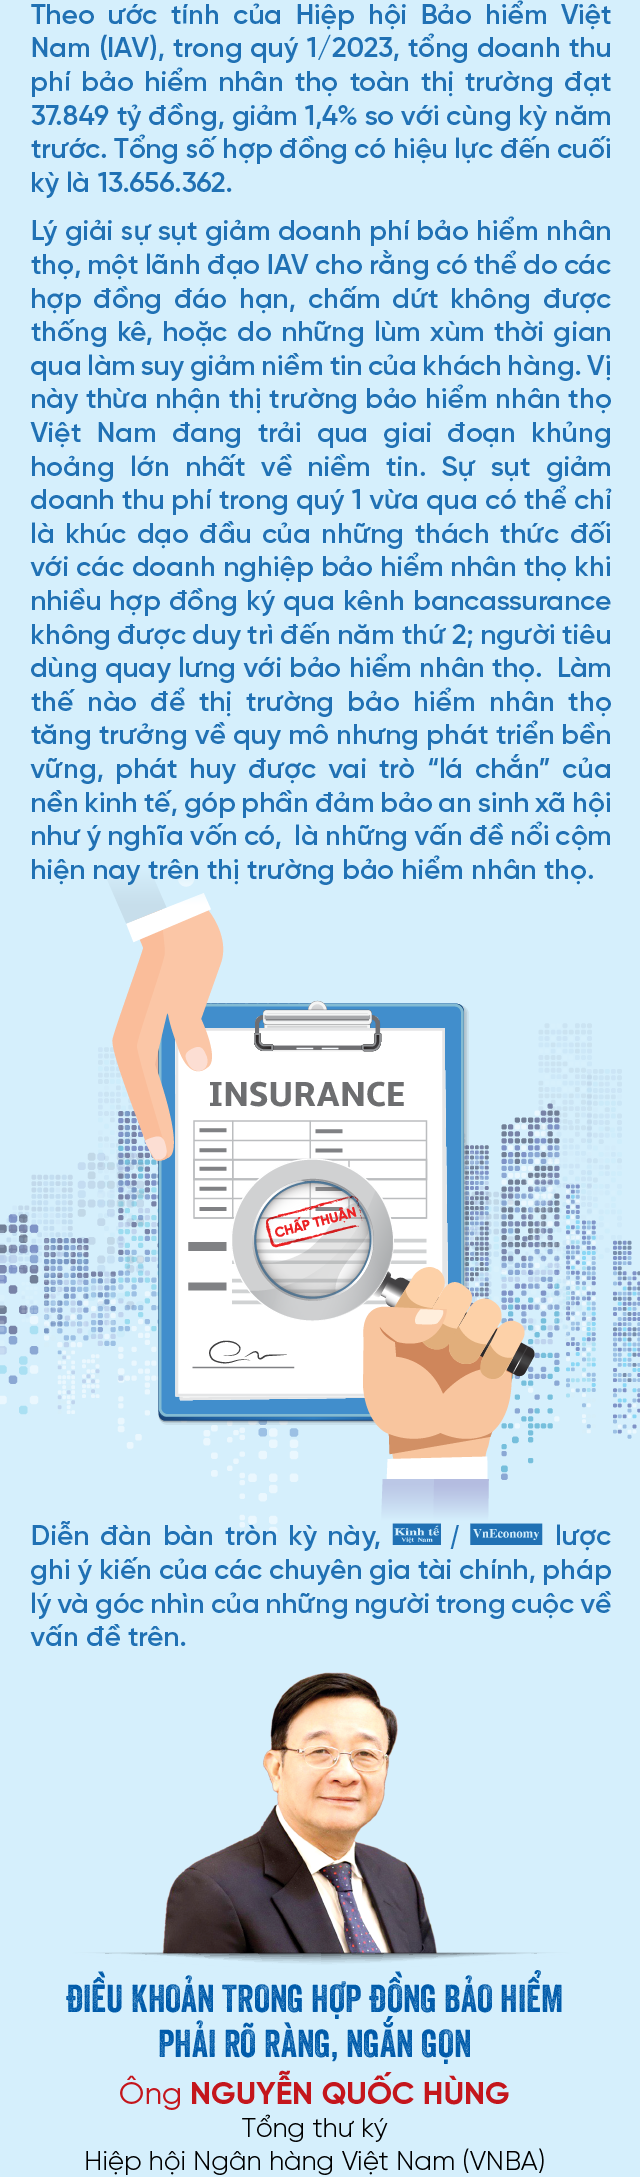 Tổng quan về bảo hiểm nhân thọ trọn đời | Prudential Việt Nam